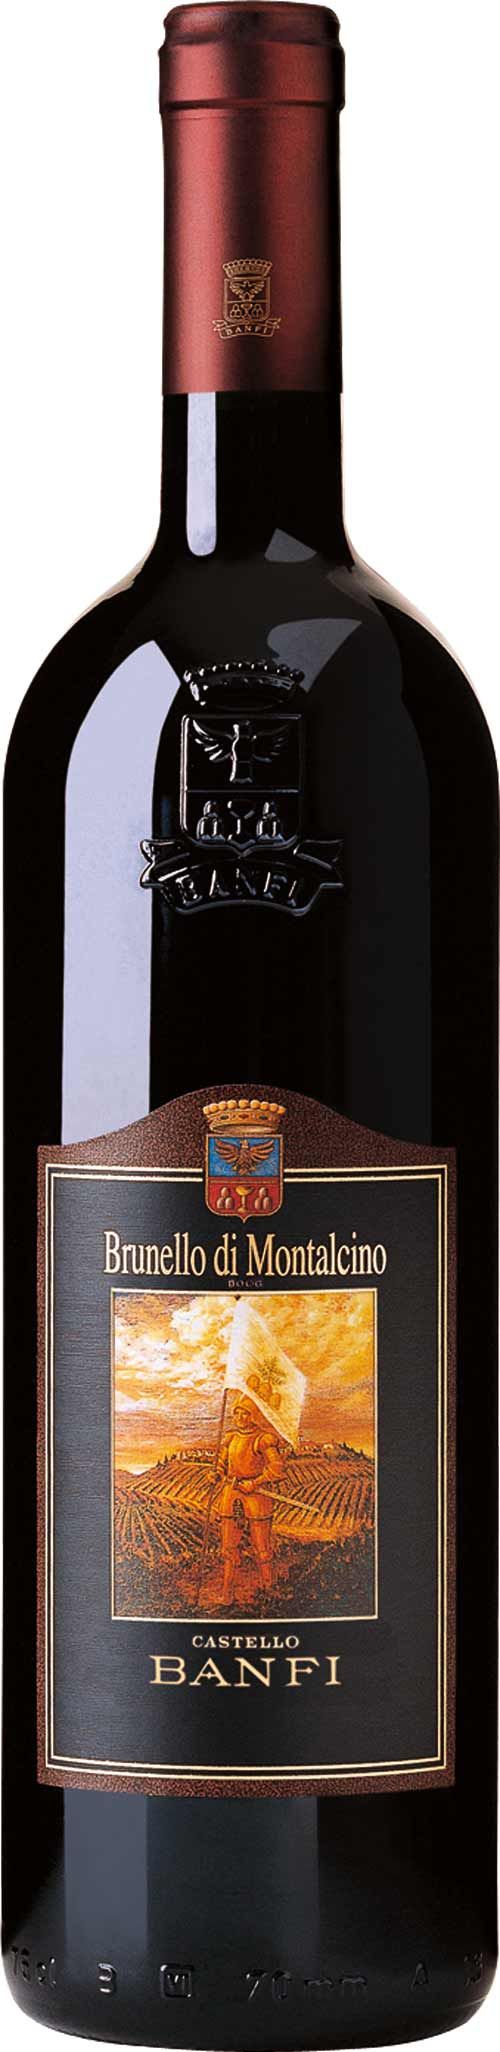 Banfi Brunello di Montalcino 2